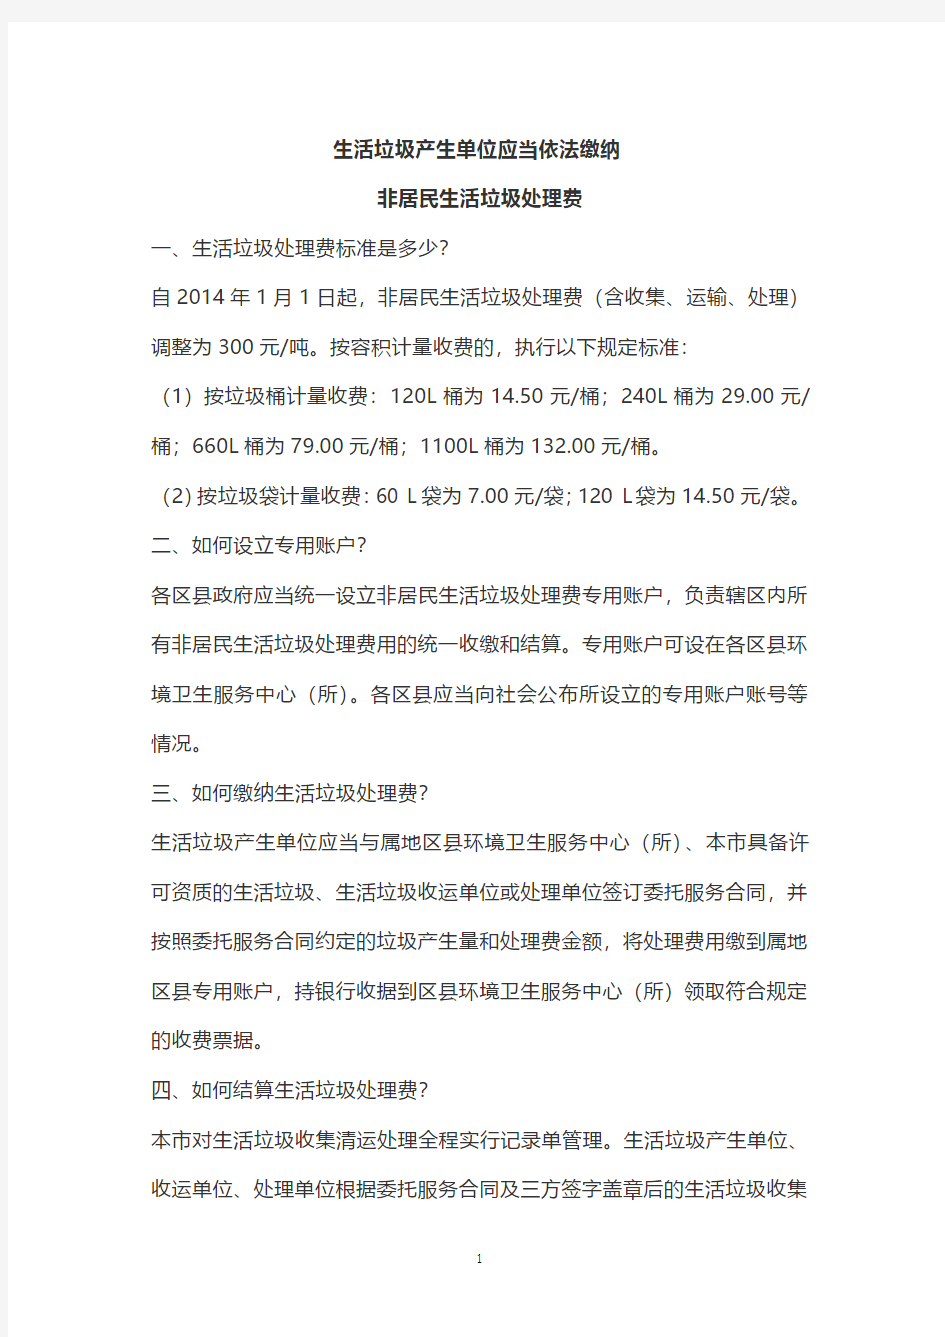 北京市非居民生活垃圾处理费标准.pdf